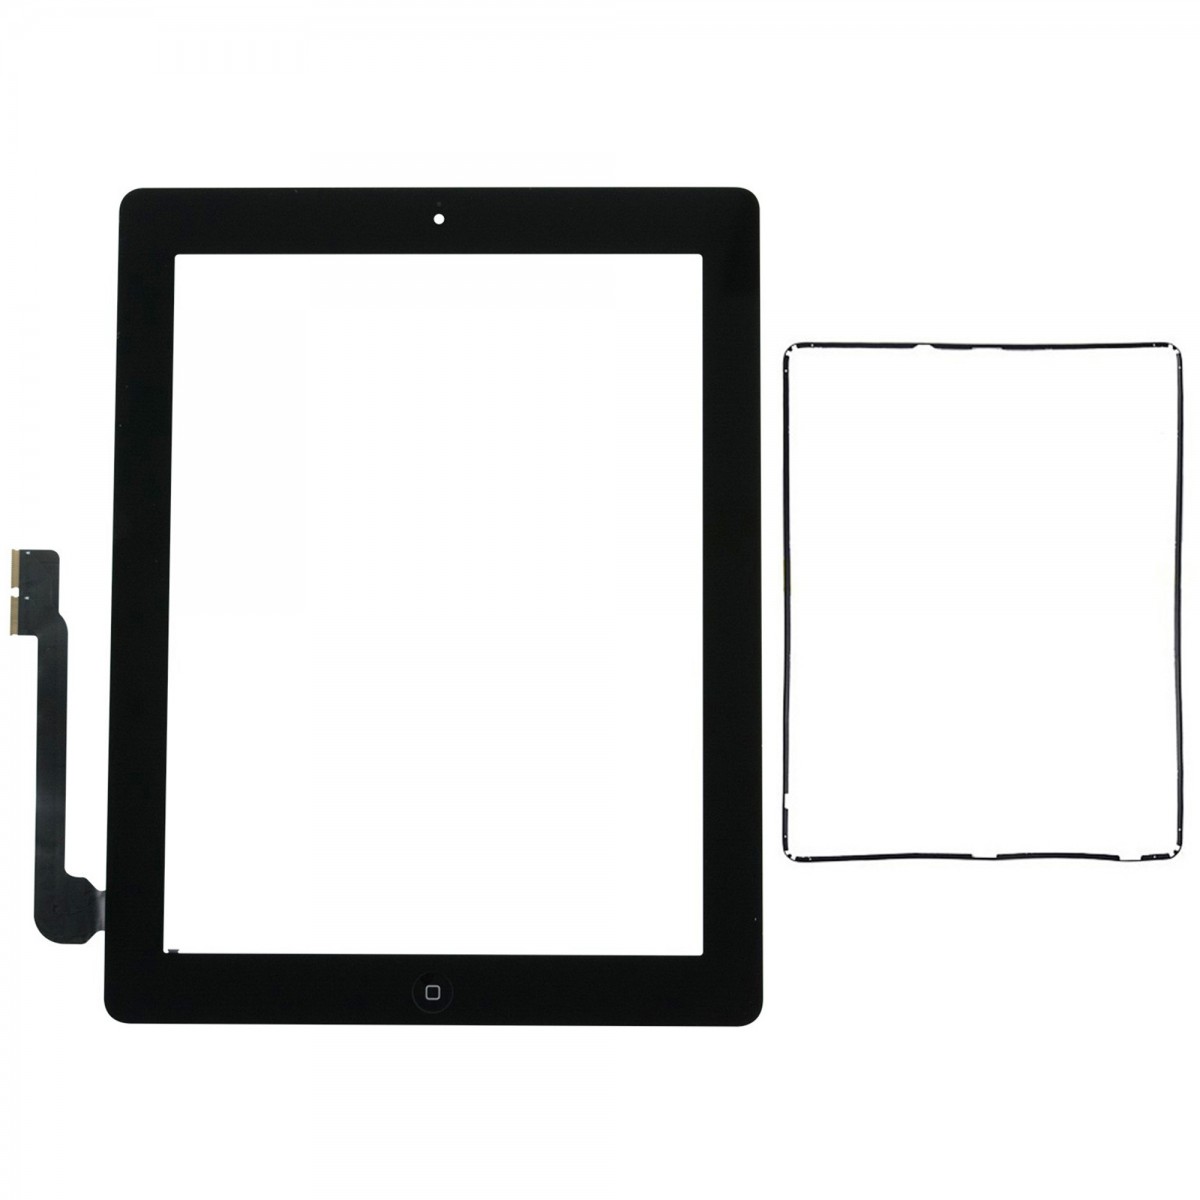 Joint iPad 2 Noir